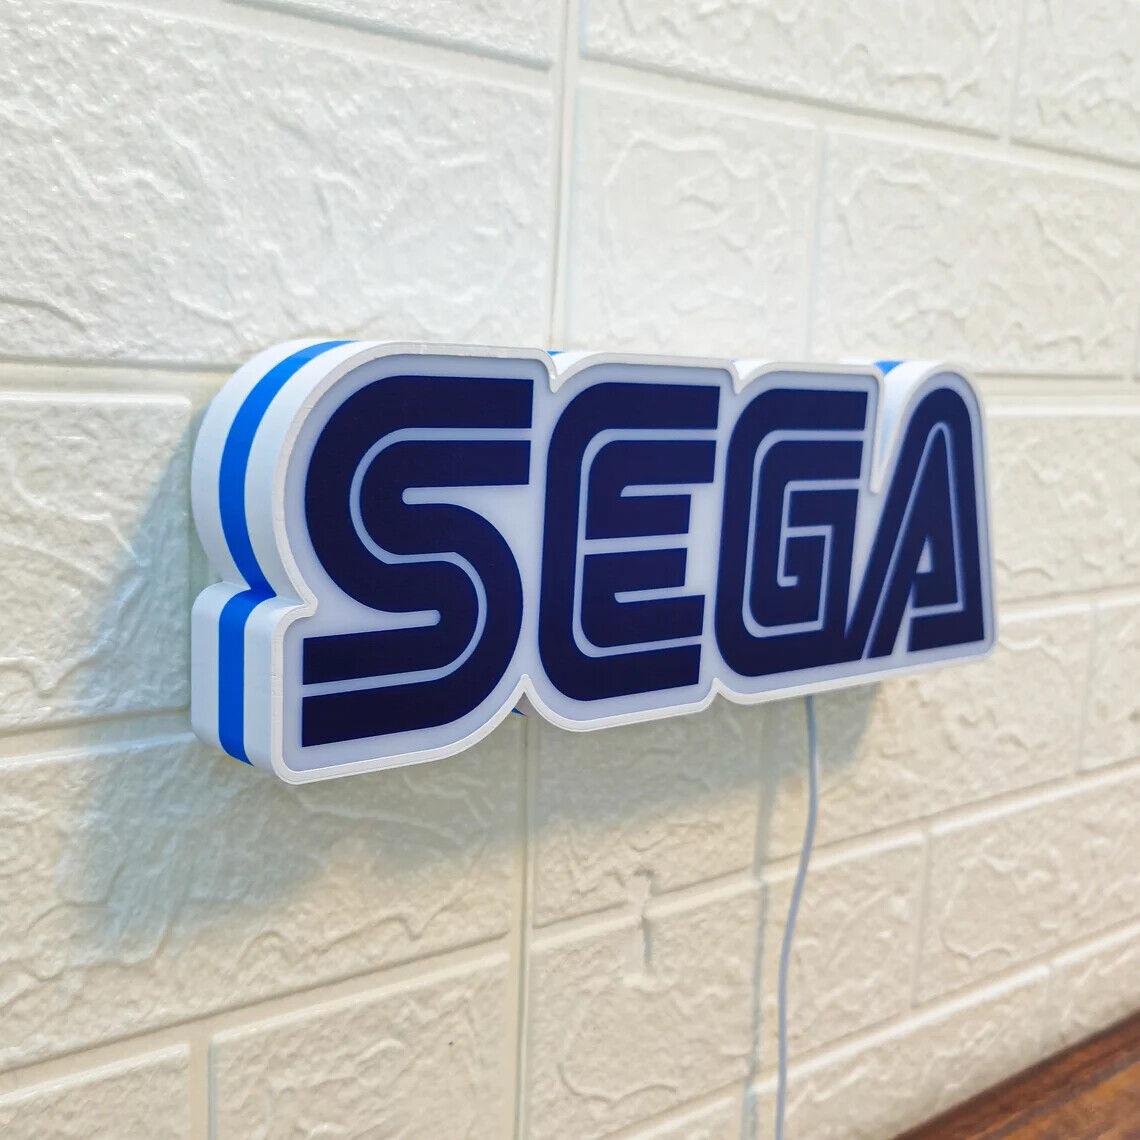 Sega Game Room Decoration Logo Sega CD, Sega Genesis, Sega Saturn and Sega 3D Lightbox - FYLZGO Signs